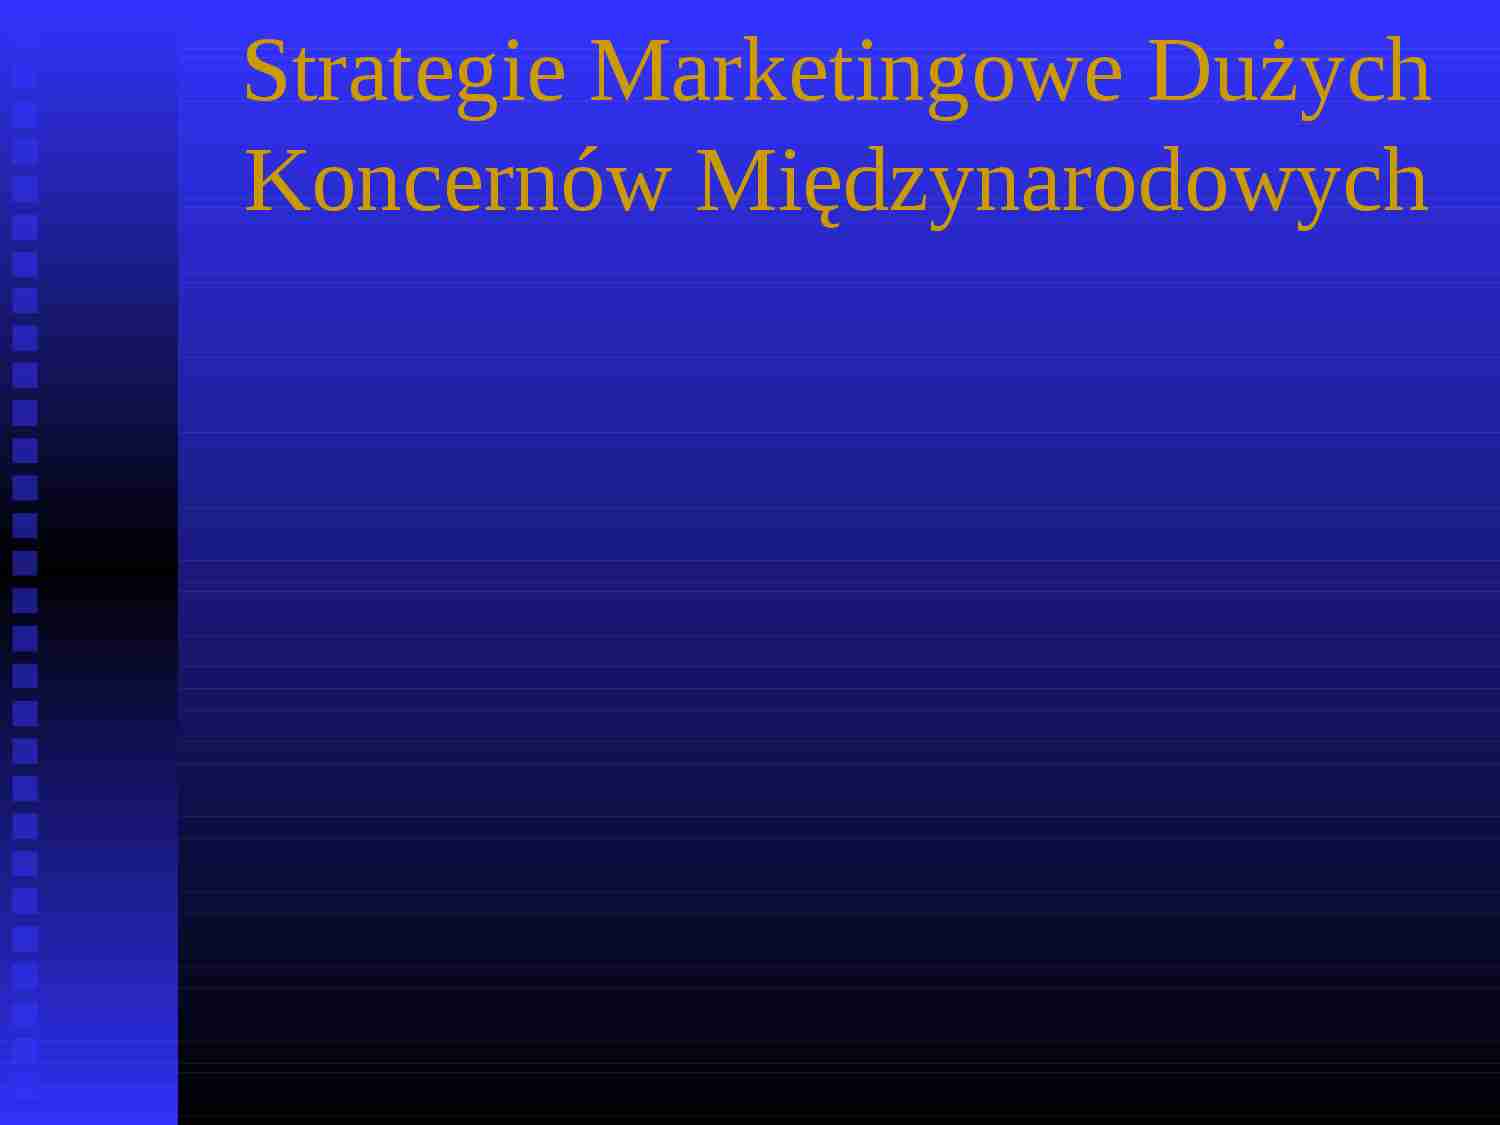 Strategie marketingowe koncernów międzynarodowych - prezentacja - strona 1